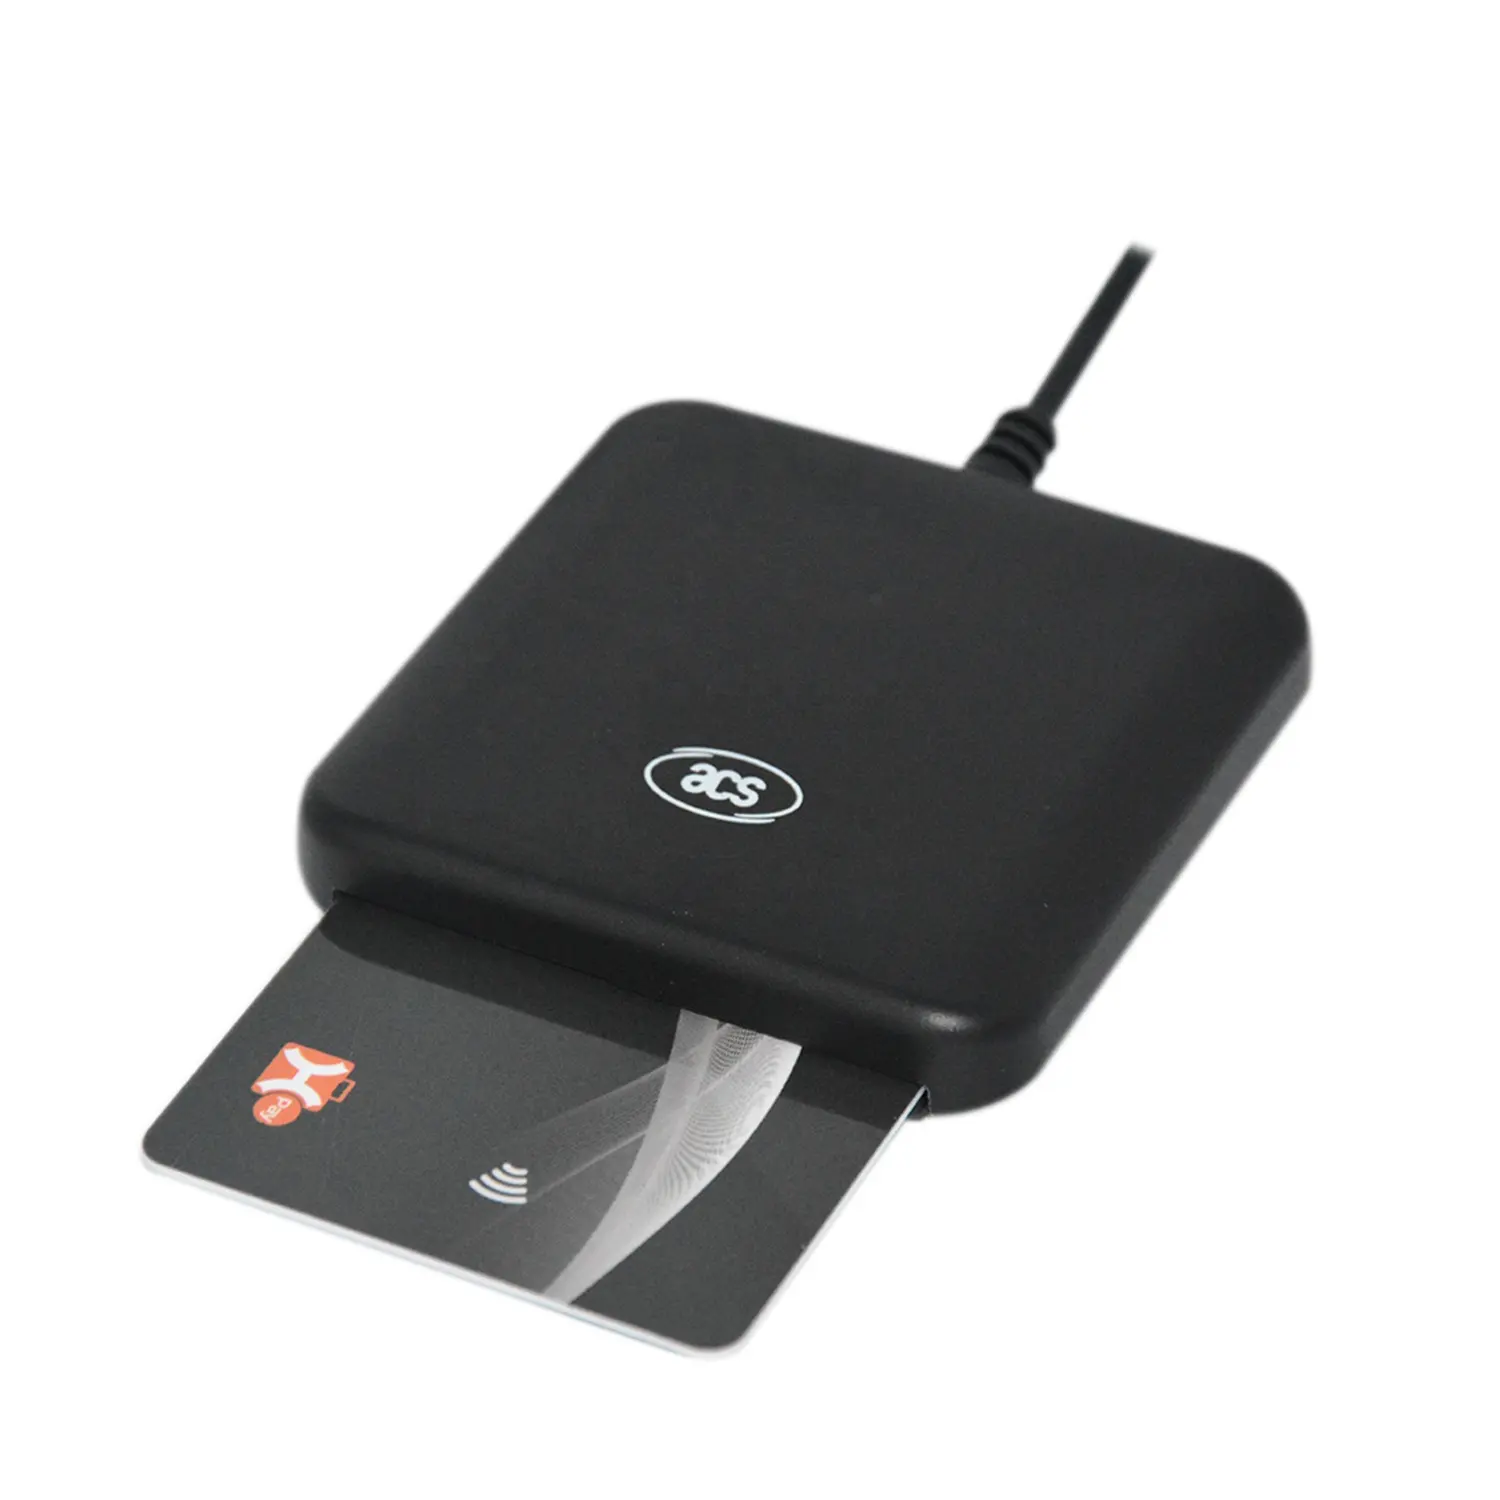 PC/SC 접촉 IC USB 스마트 칩 카드 판독기 ACR39U-I1